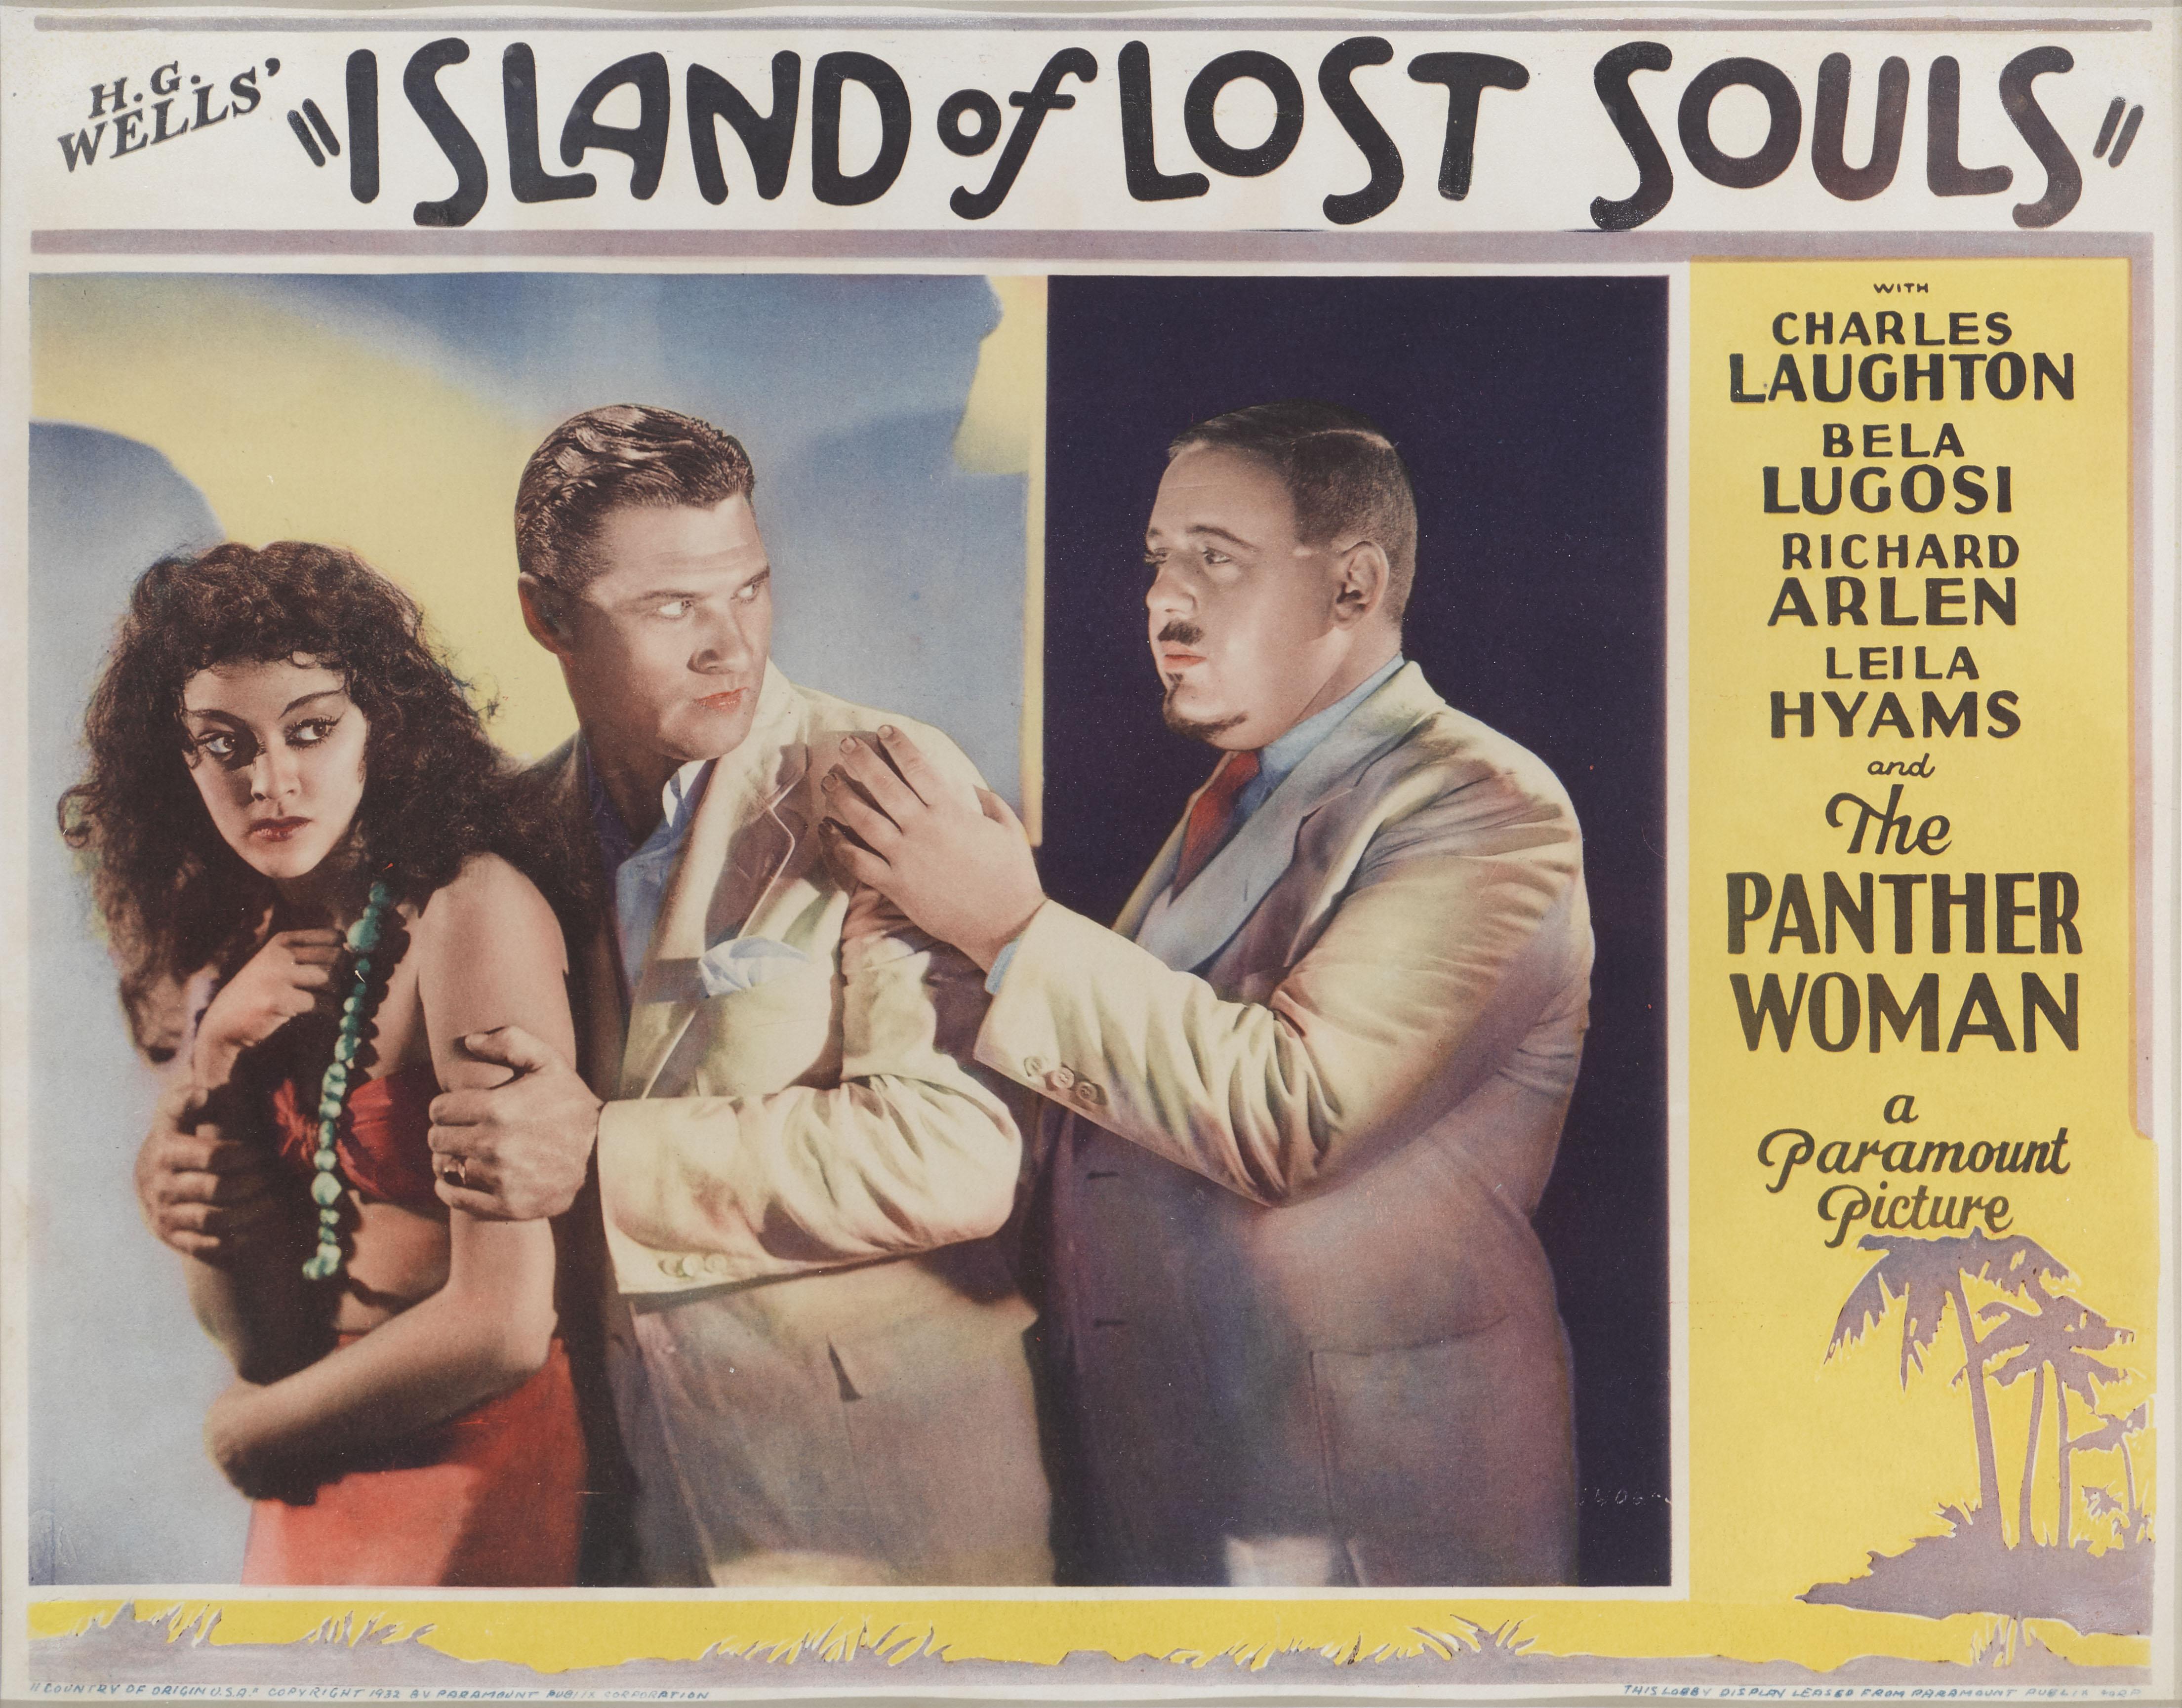 Dies ist eine äußerst seltene und sehr begehrte Original-US-Lobbykarte  für den Horror- und Science-Fiction-Film Island of Lost Souls von 1932.
In diesem Film spielten Charles Laughton, Bela Lugosi und Richard Arlen die Hauptrollen.
Das Werk ist mit